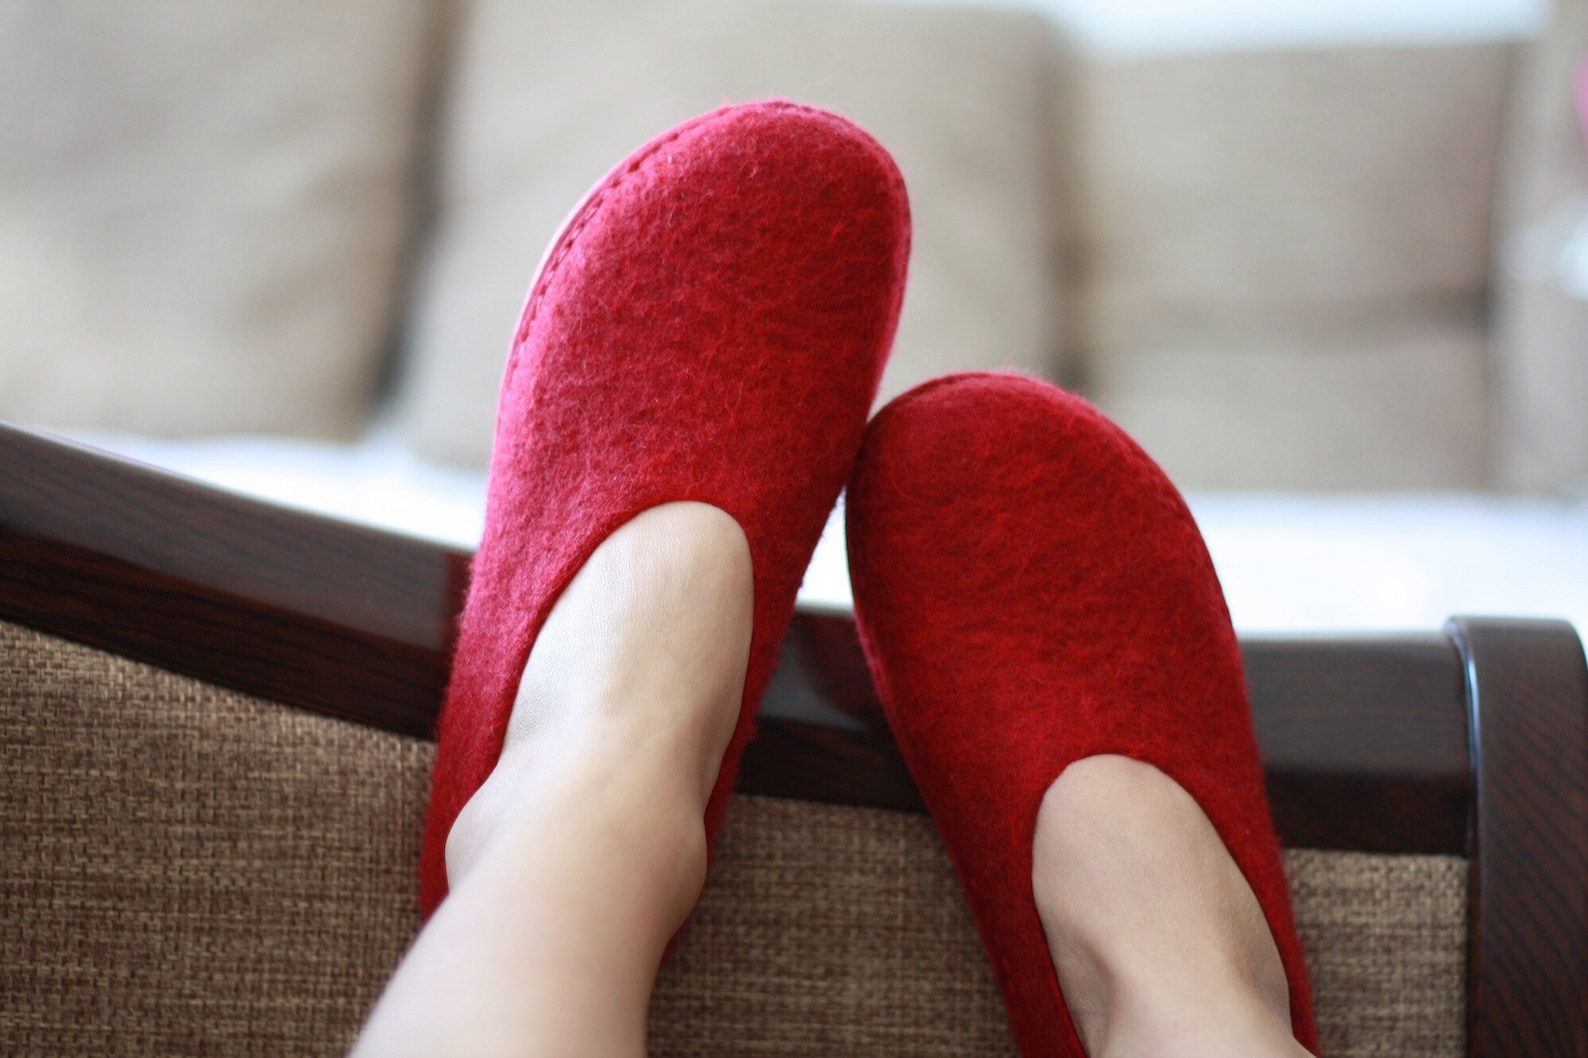 lucielalune / spring ballet shoes/eu38.5 us8 uk5.5/ vin red / women slip on/ handmade loafers.